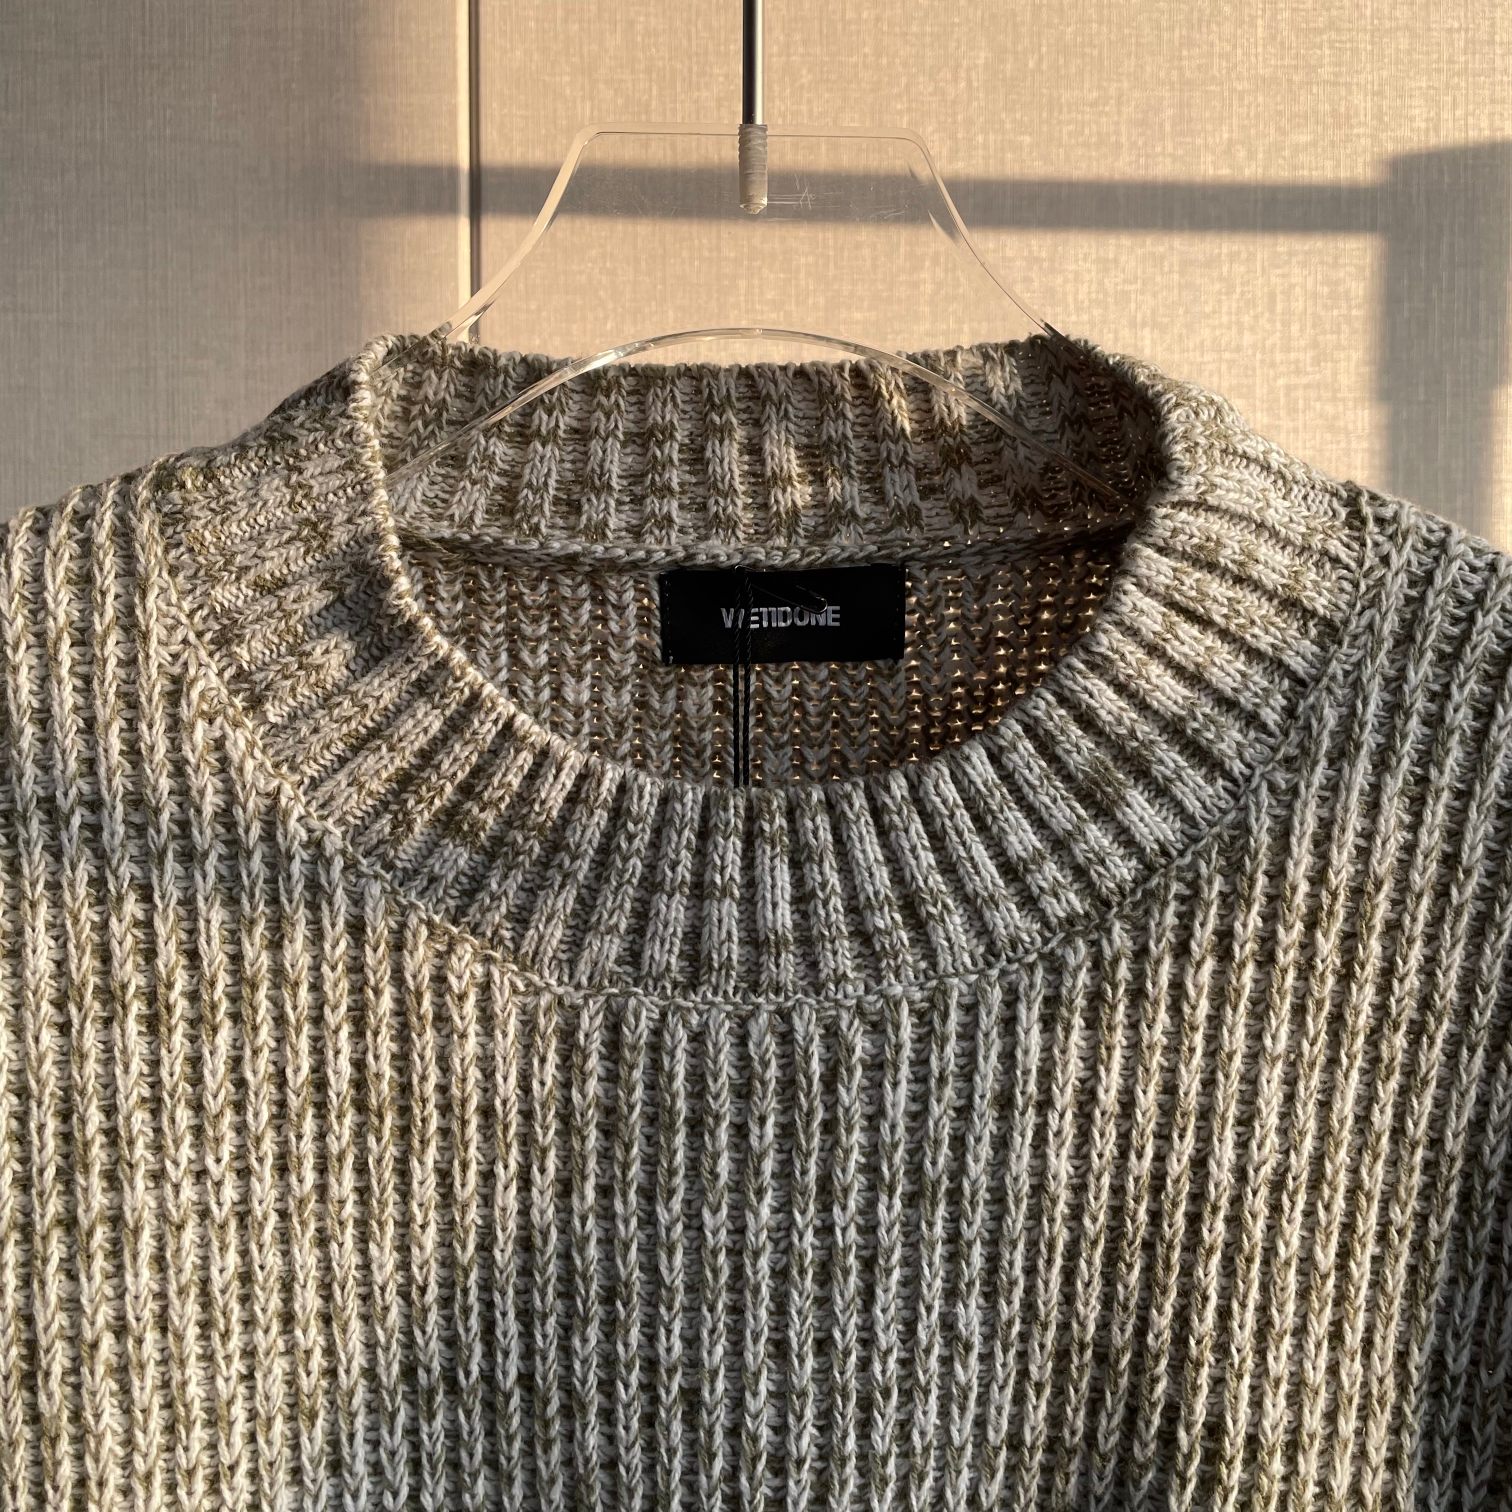 WE11DONE トップス ウェルダン服激安通販 暖かい セーター ニット シンプル 触り心地のいい グレイ_3